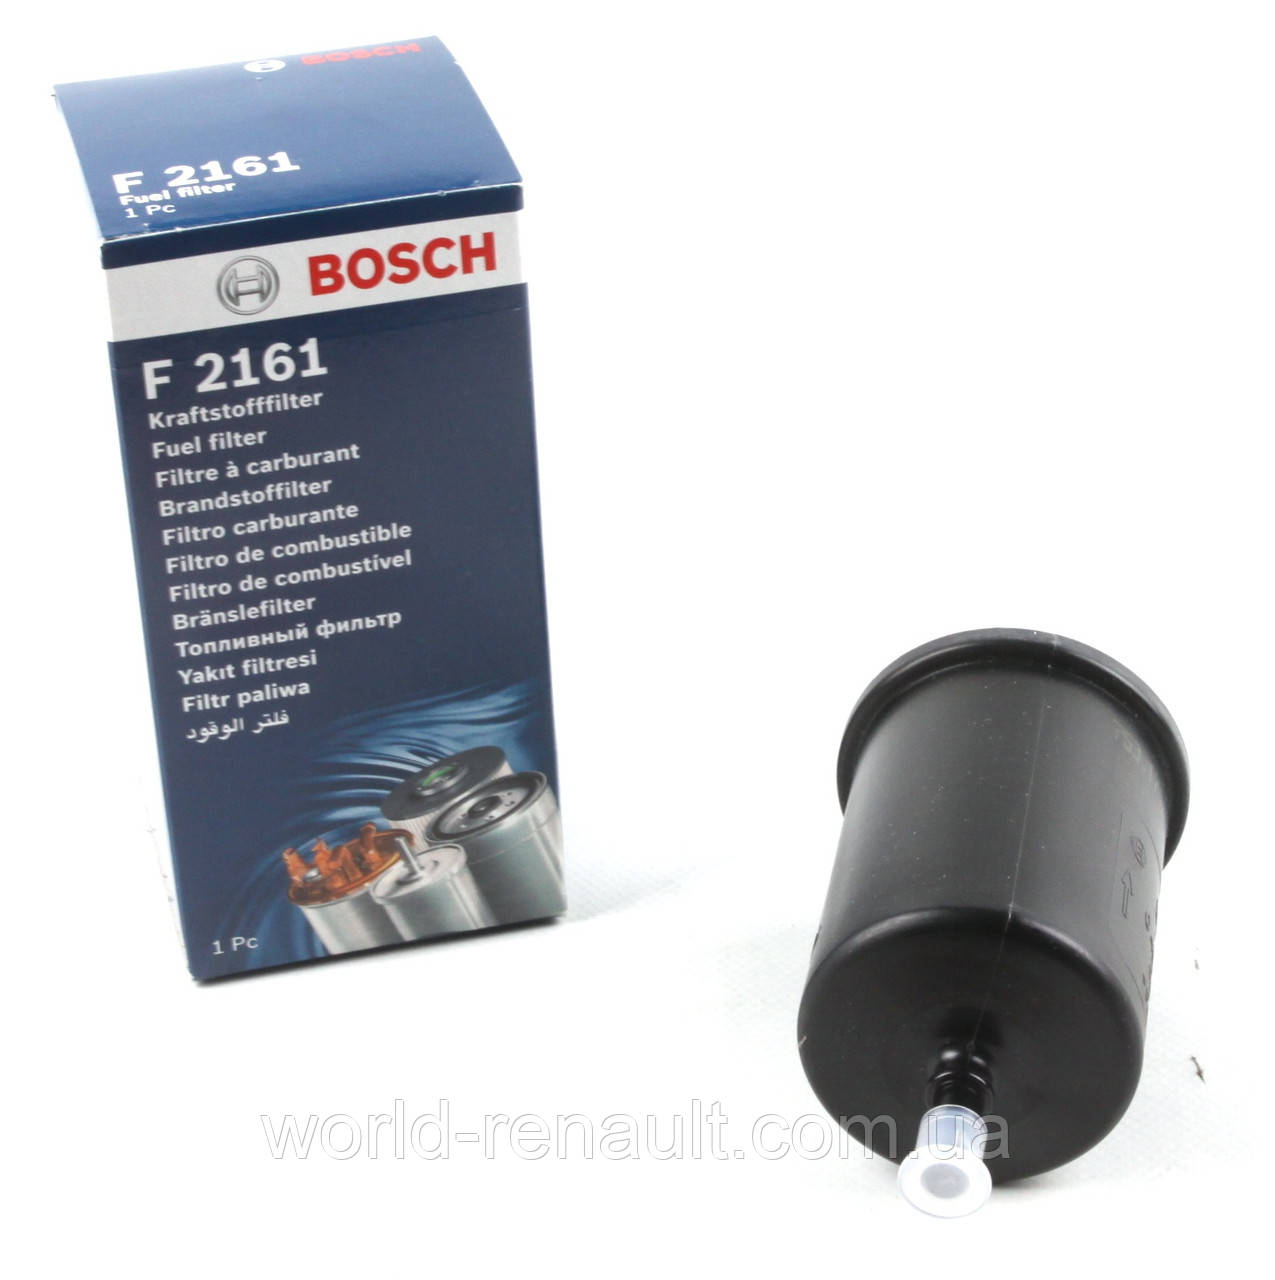 BOSCH (Німеччина) 0450902161 — Фільтр паливний на Renault Clio 3 (D4F 1.2i, K4J 1.4i 16 V, K4M 1.6i 16 V)